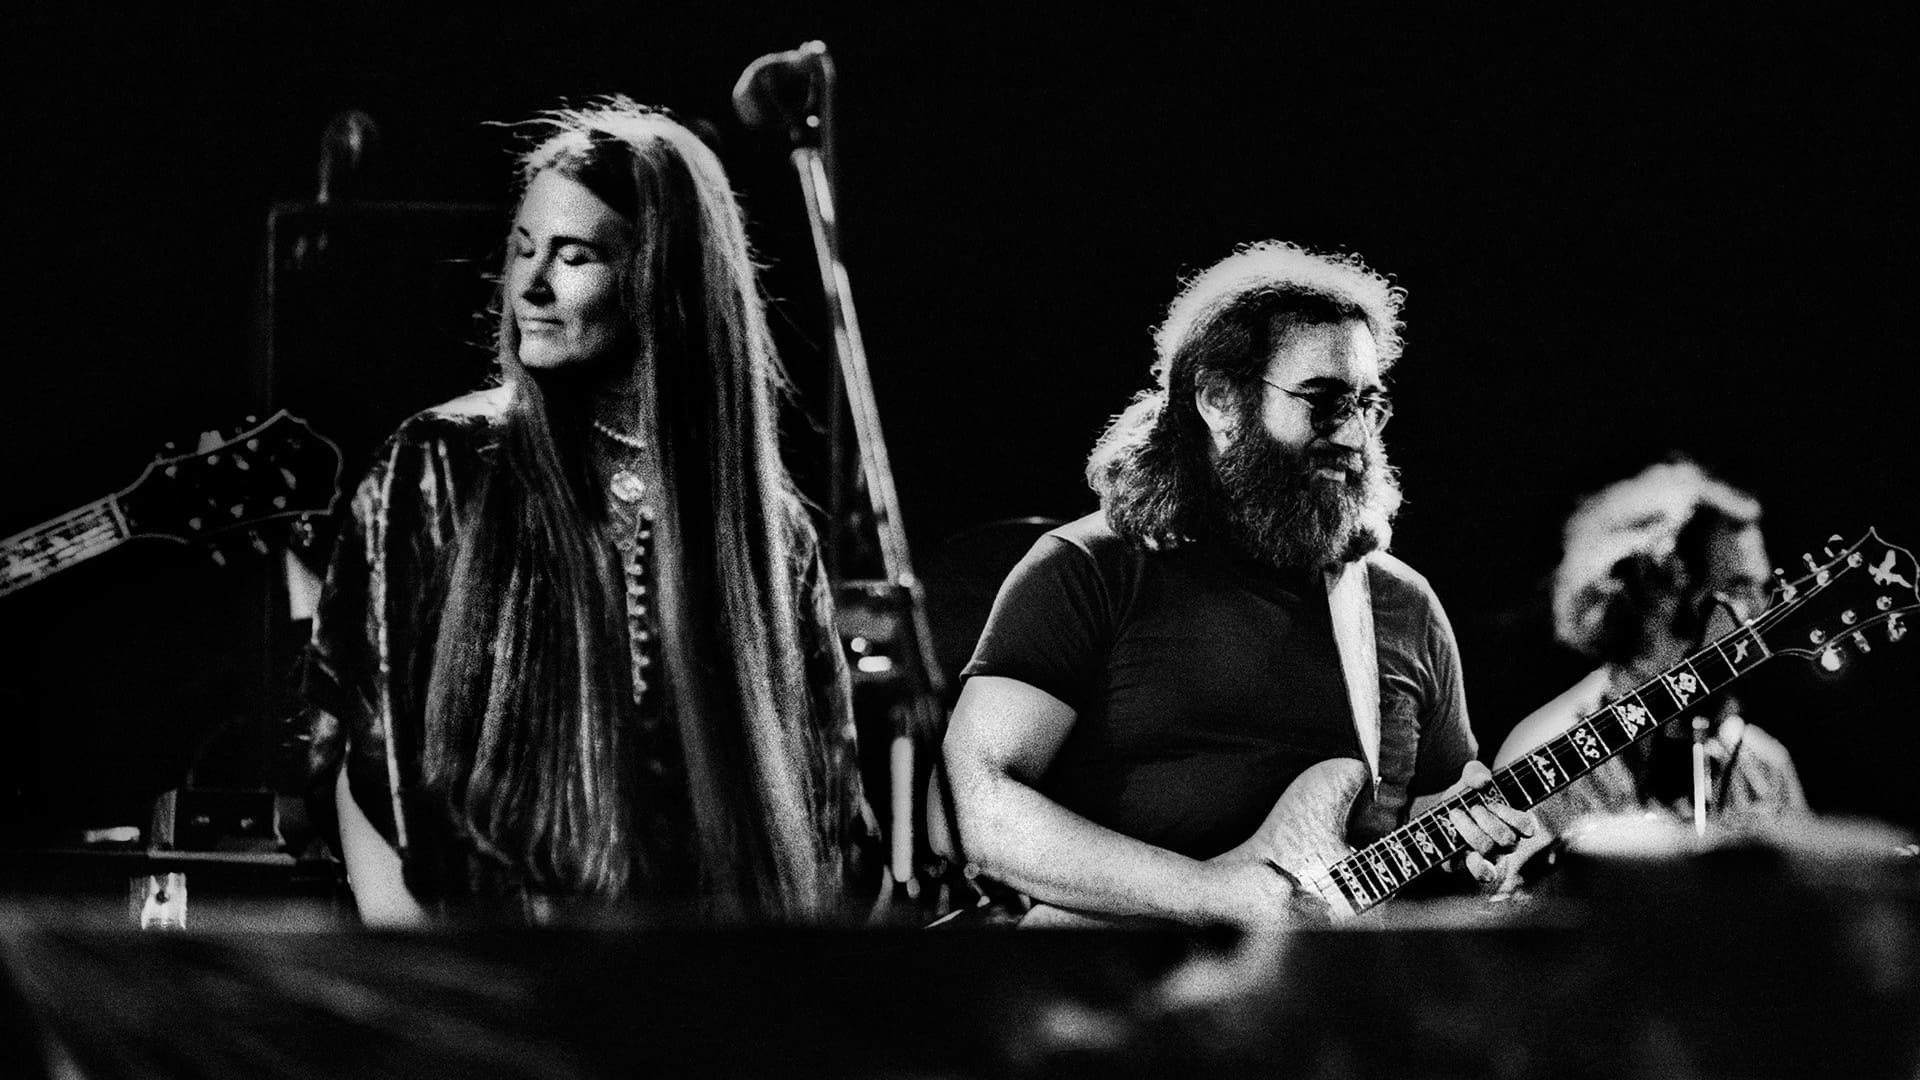 გრძელი უცნაური მოგზაურობა / Long Strange Trip - The Untold Story of The Grateful Dead